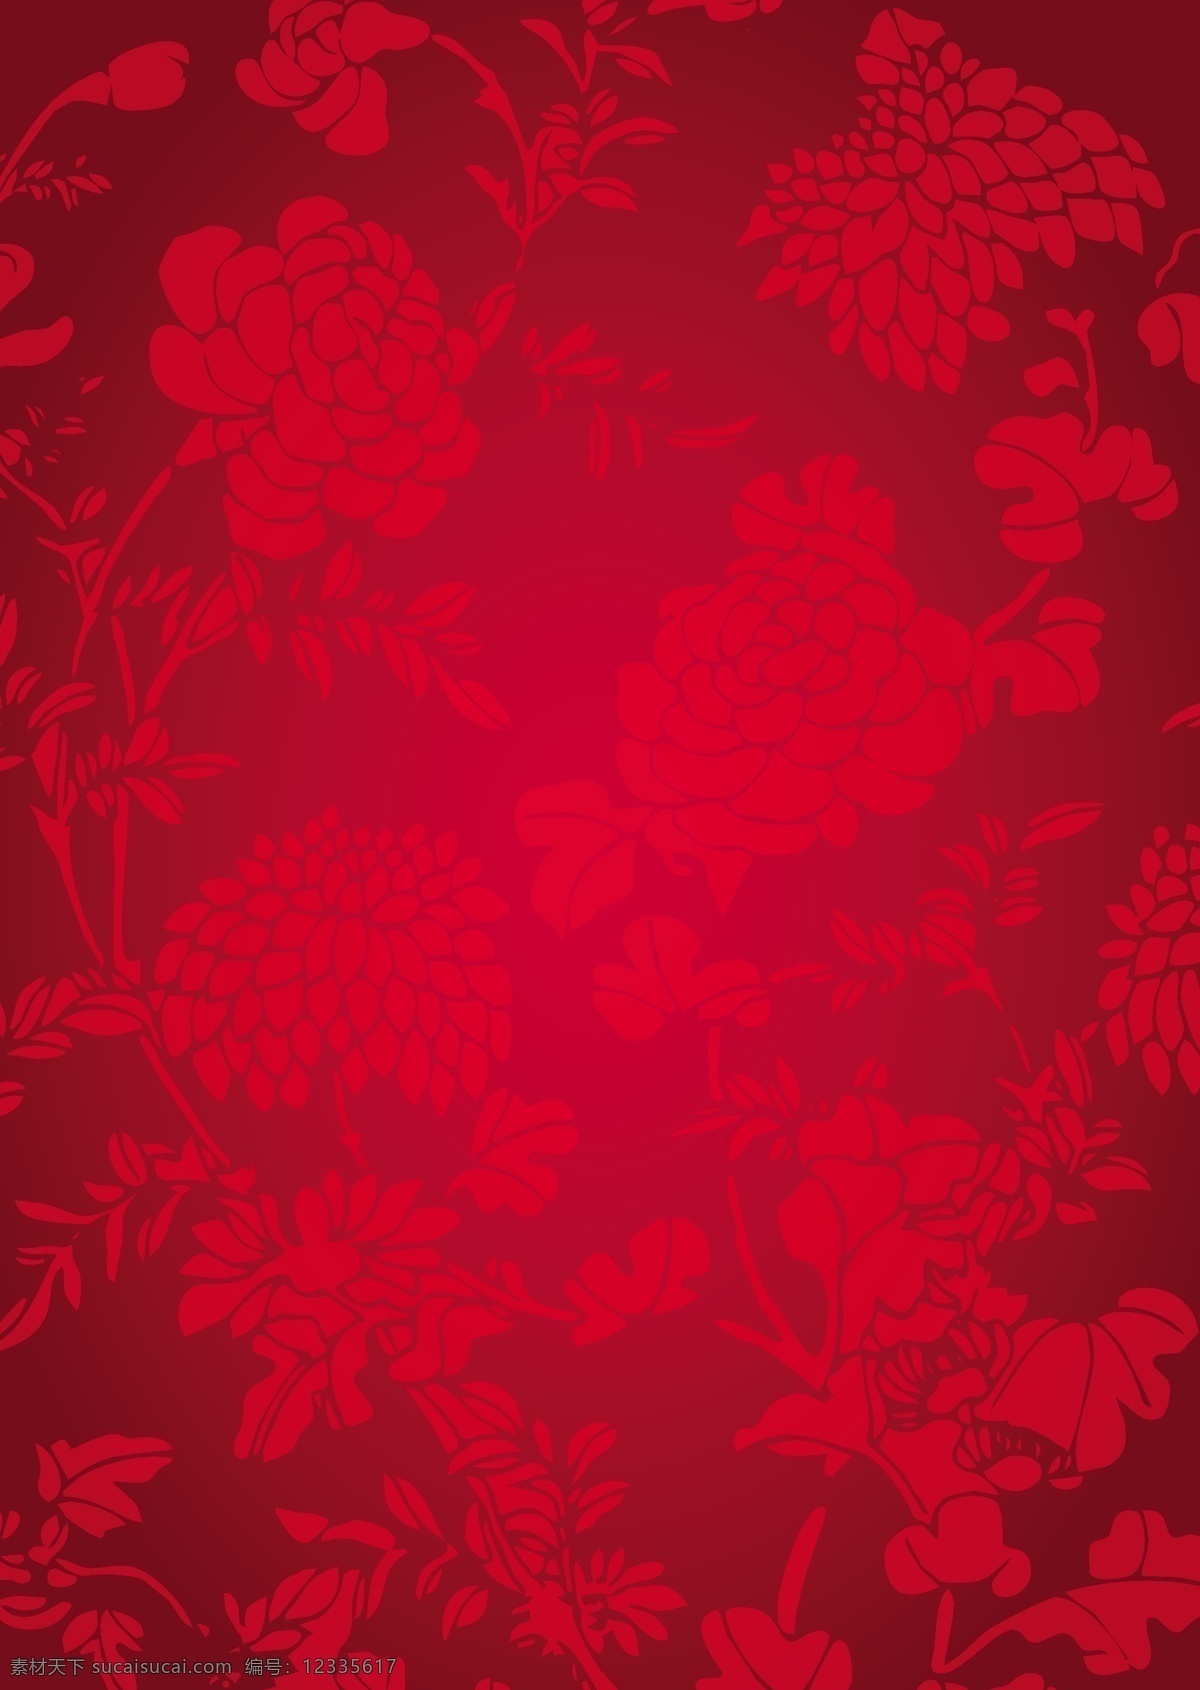 红色中国 传统 纹理 背景 矢量 花纹 简约 卡通 设计素材 平面素材